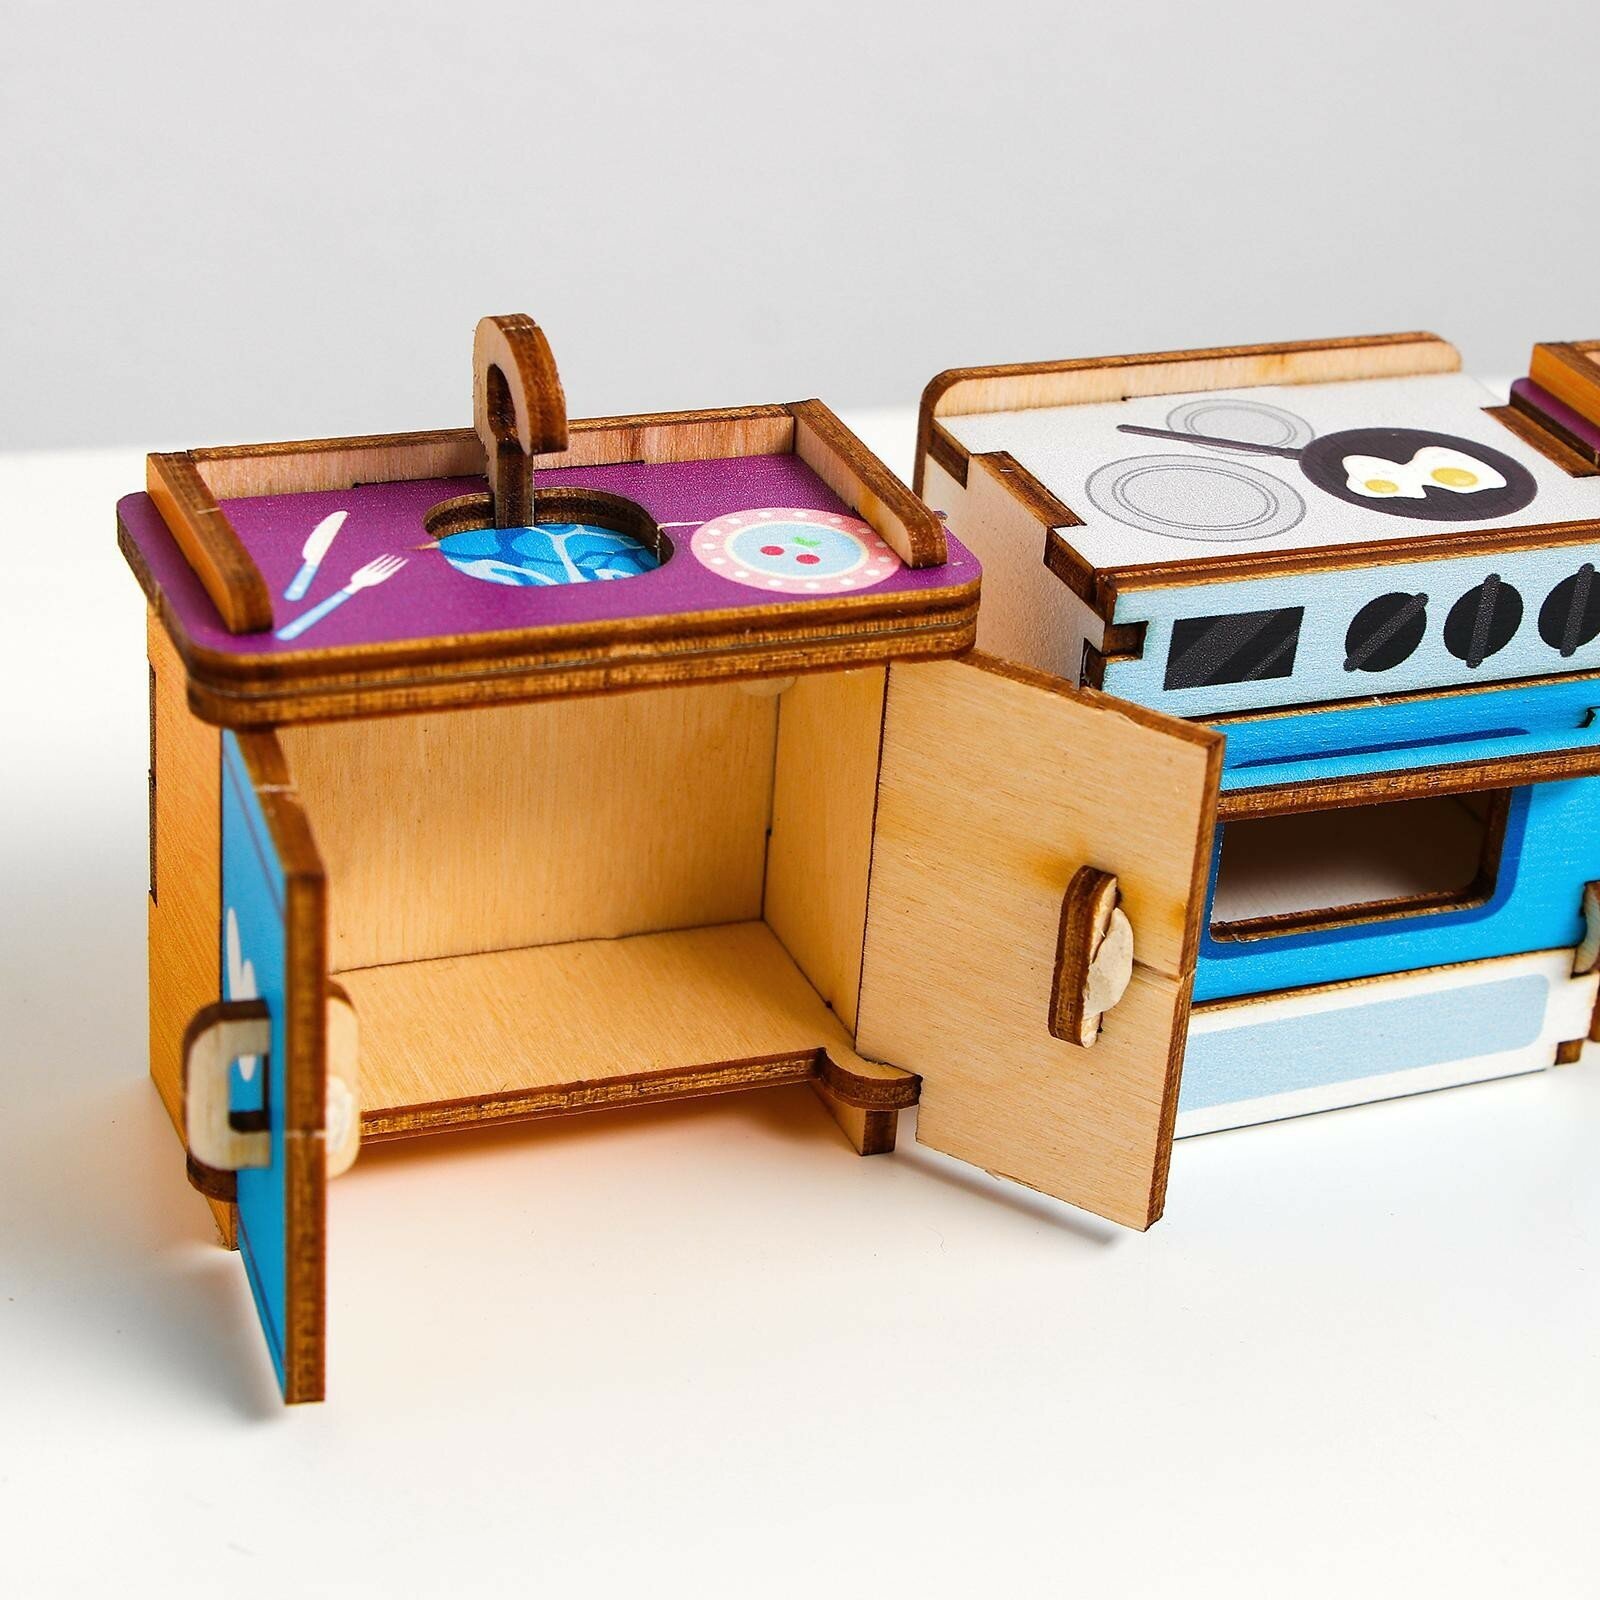 Развивающая игра "Кухня", набор для кукольного домика, для детей и малышей от 3 лет